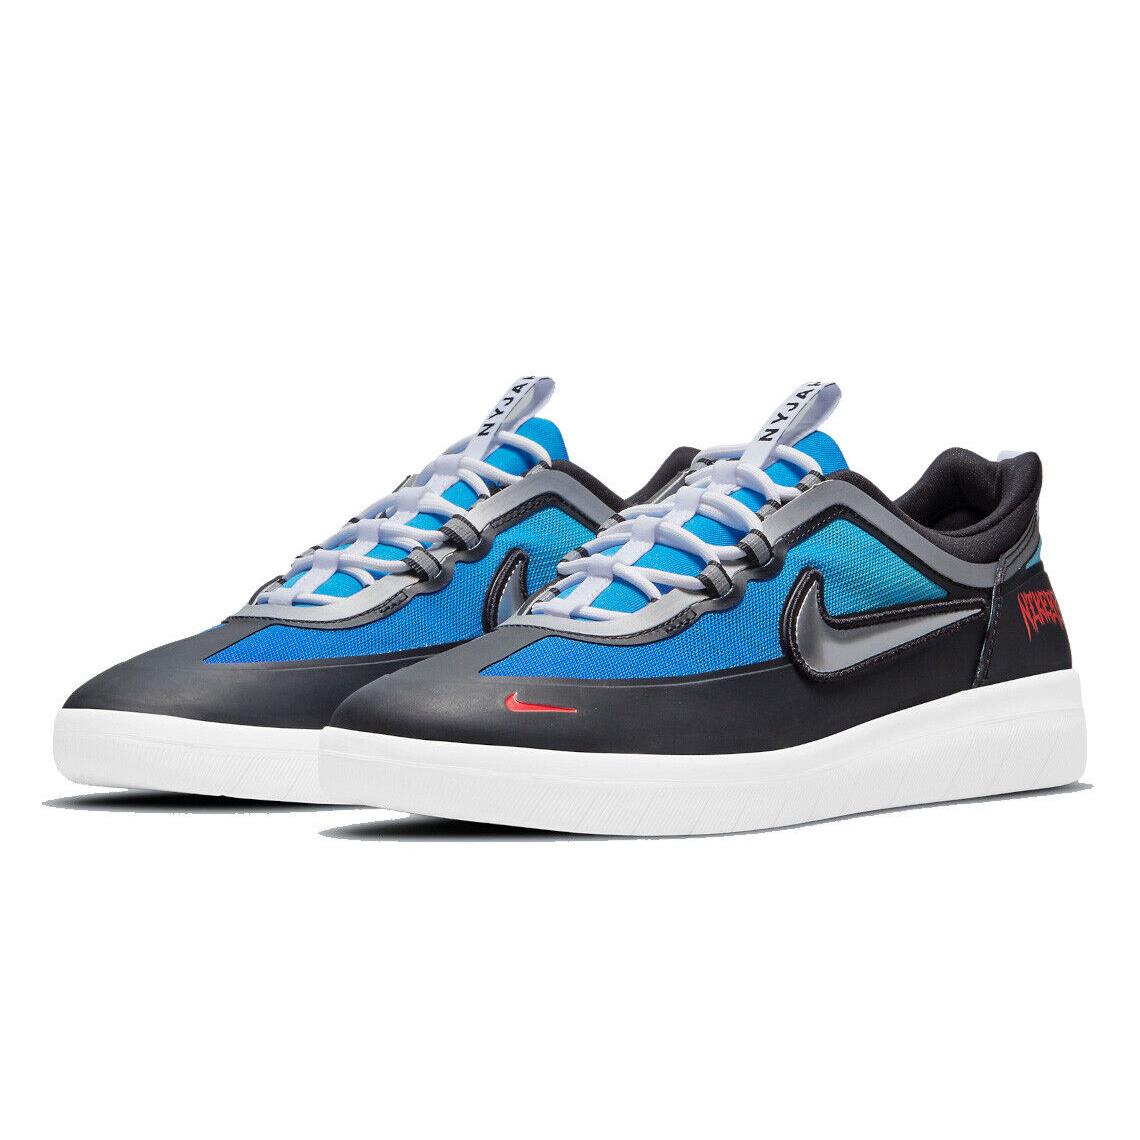 Nike SB Nyjah Free 2 Premium Mens Size 9 Samborgini Shoes DC9104 400 Blue